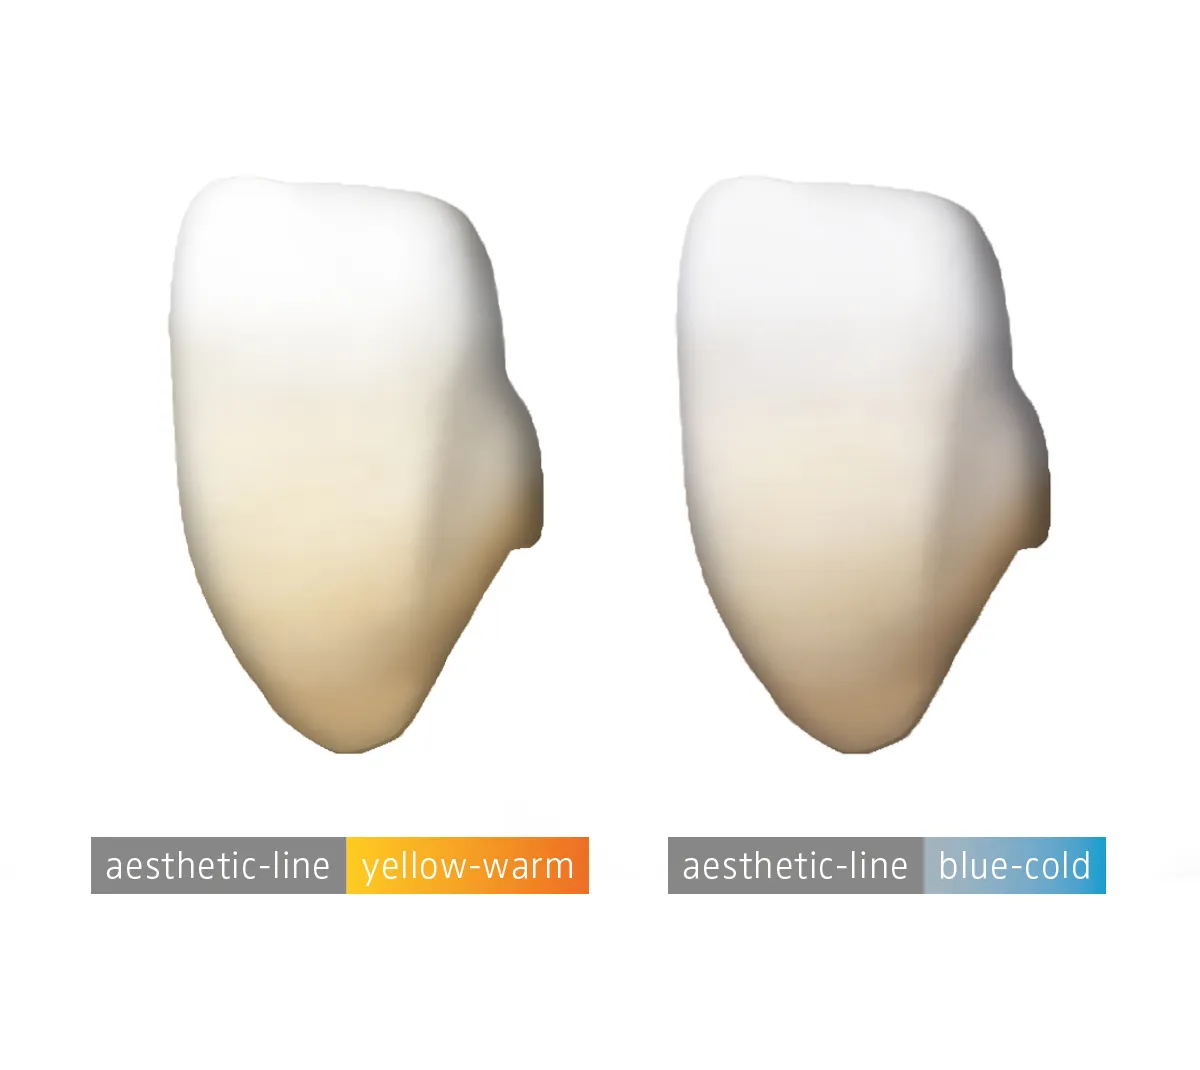 Die zwei Ästhetiklinen von Dental Direkt im vergleich